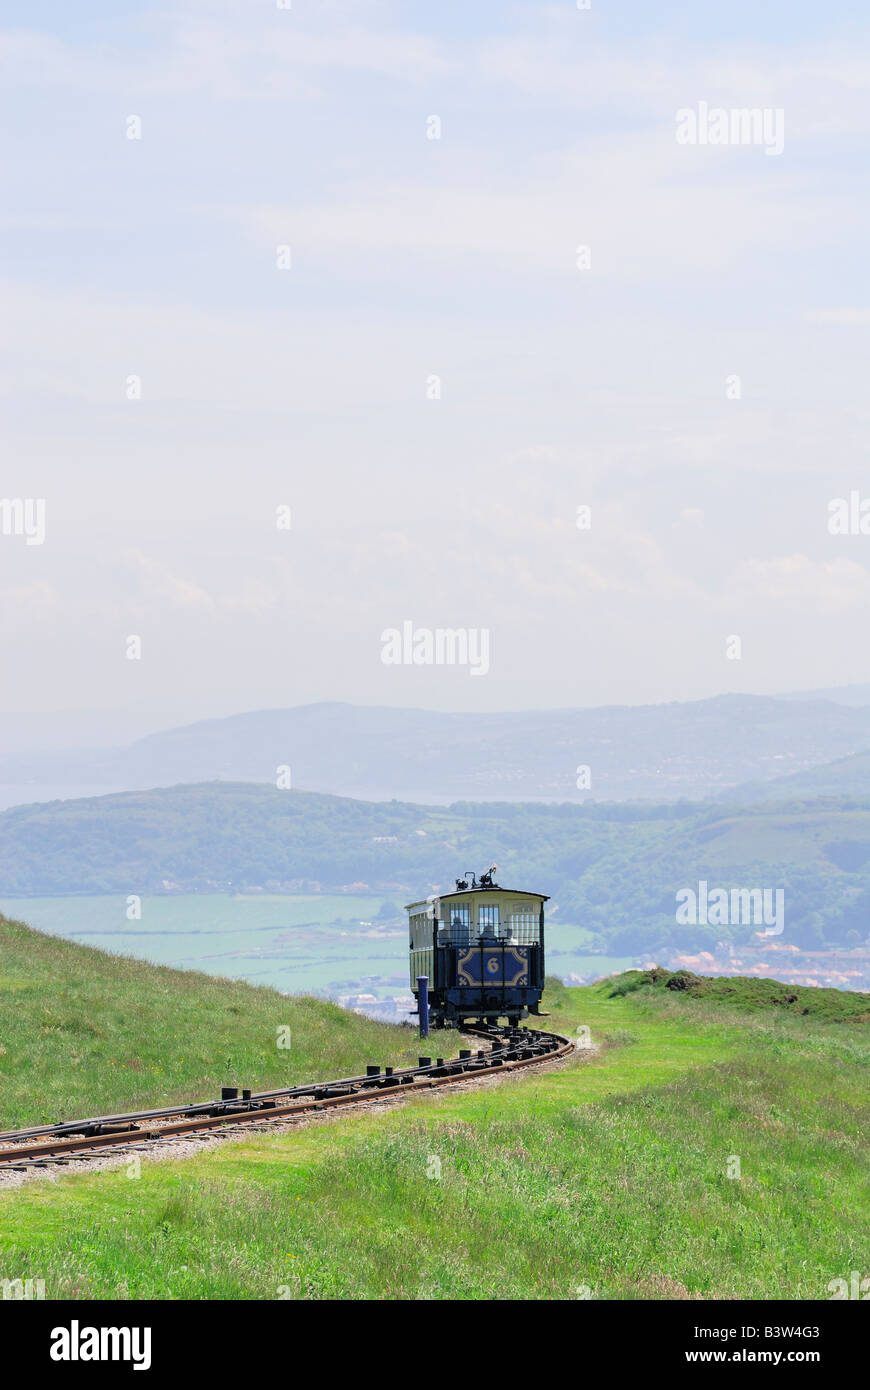 Der Great Orme Straßenbahn in Llandudno Nord-Wales Stockfoto